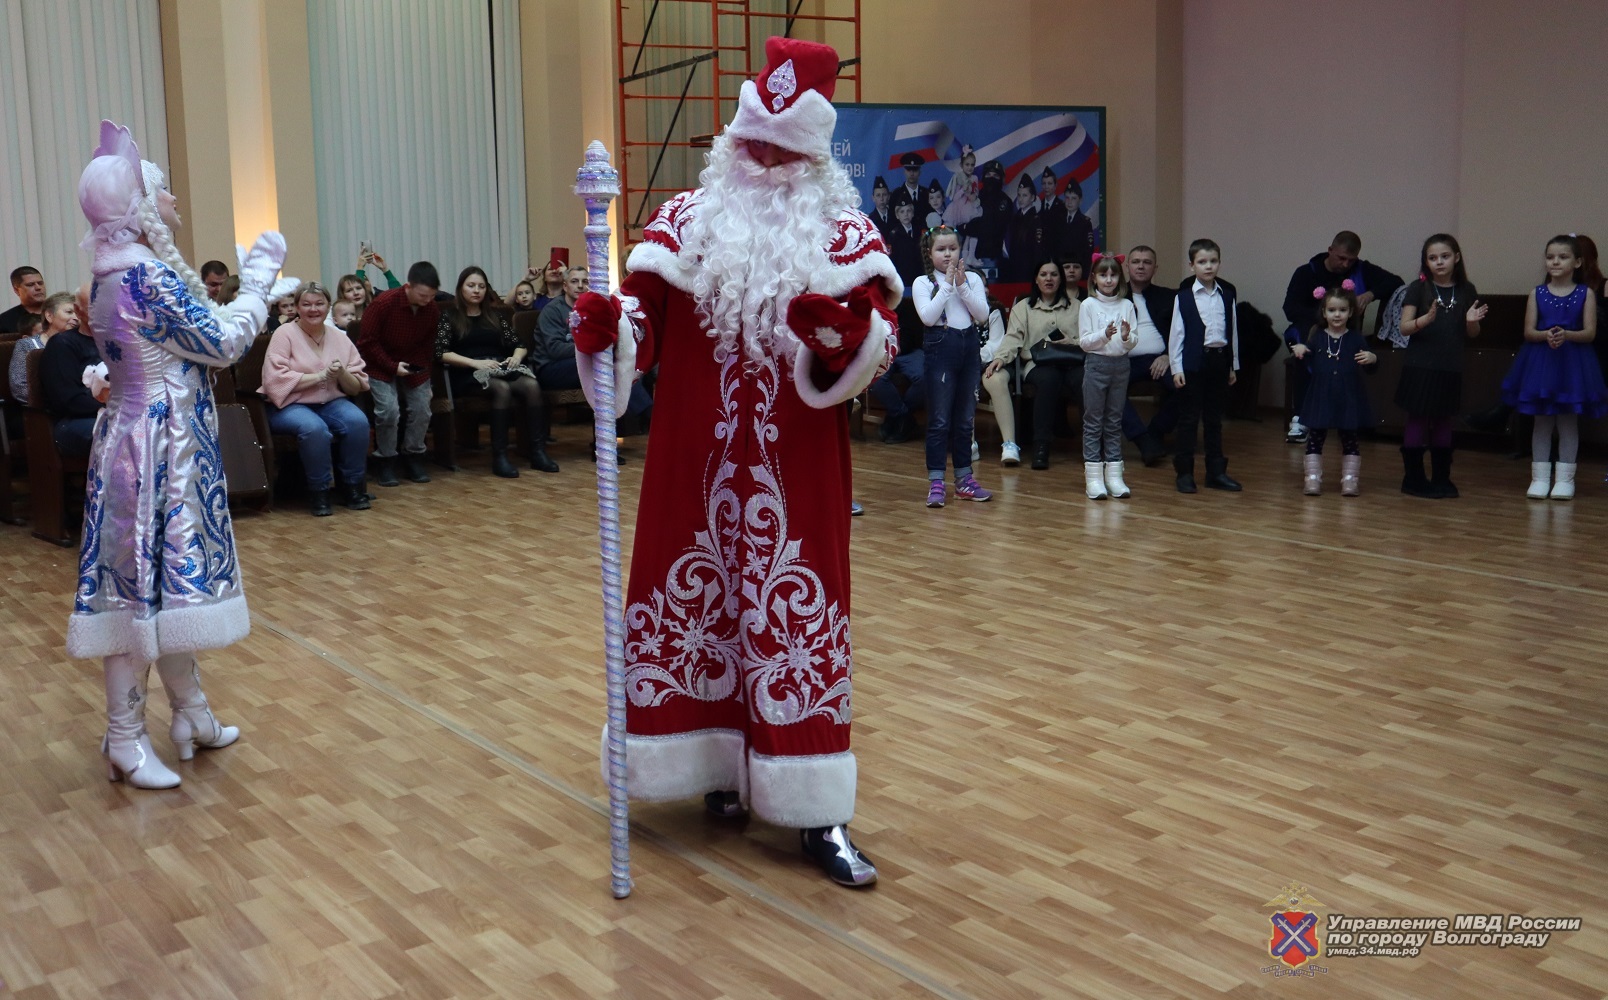 Сотрудники волгоградской полиции поздравили детей с Новым годом